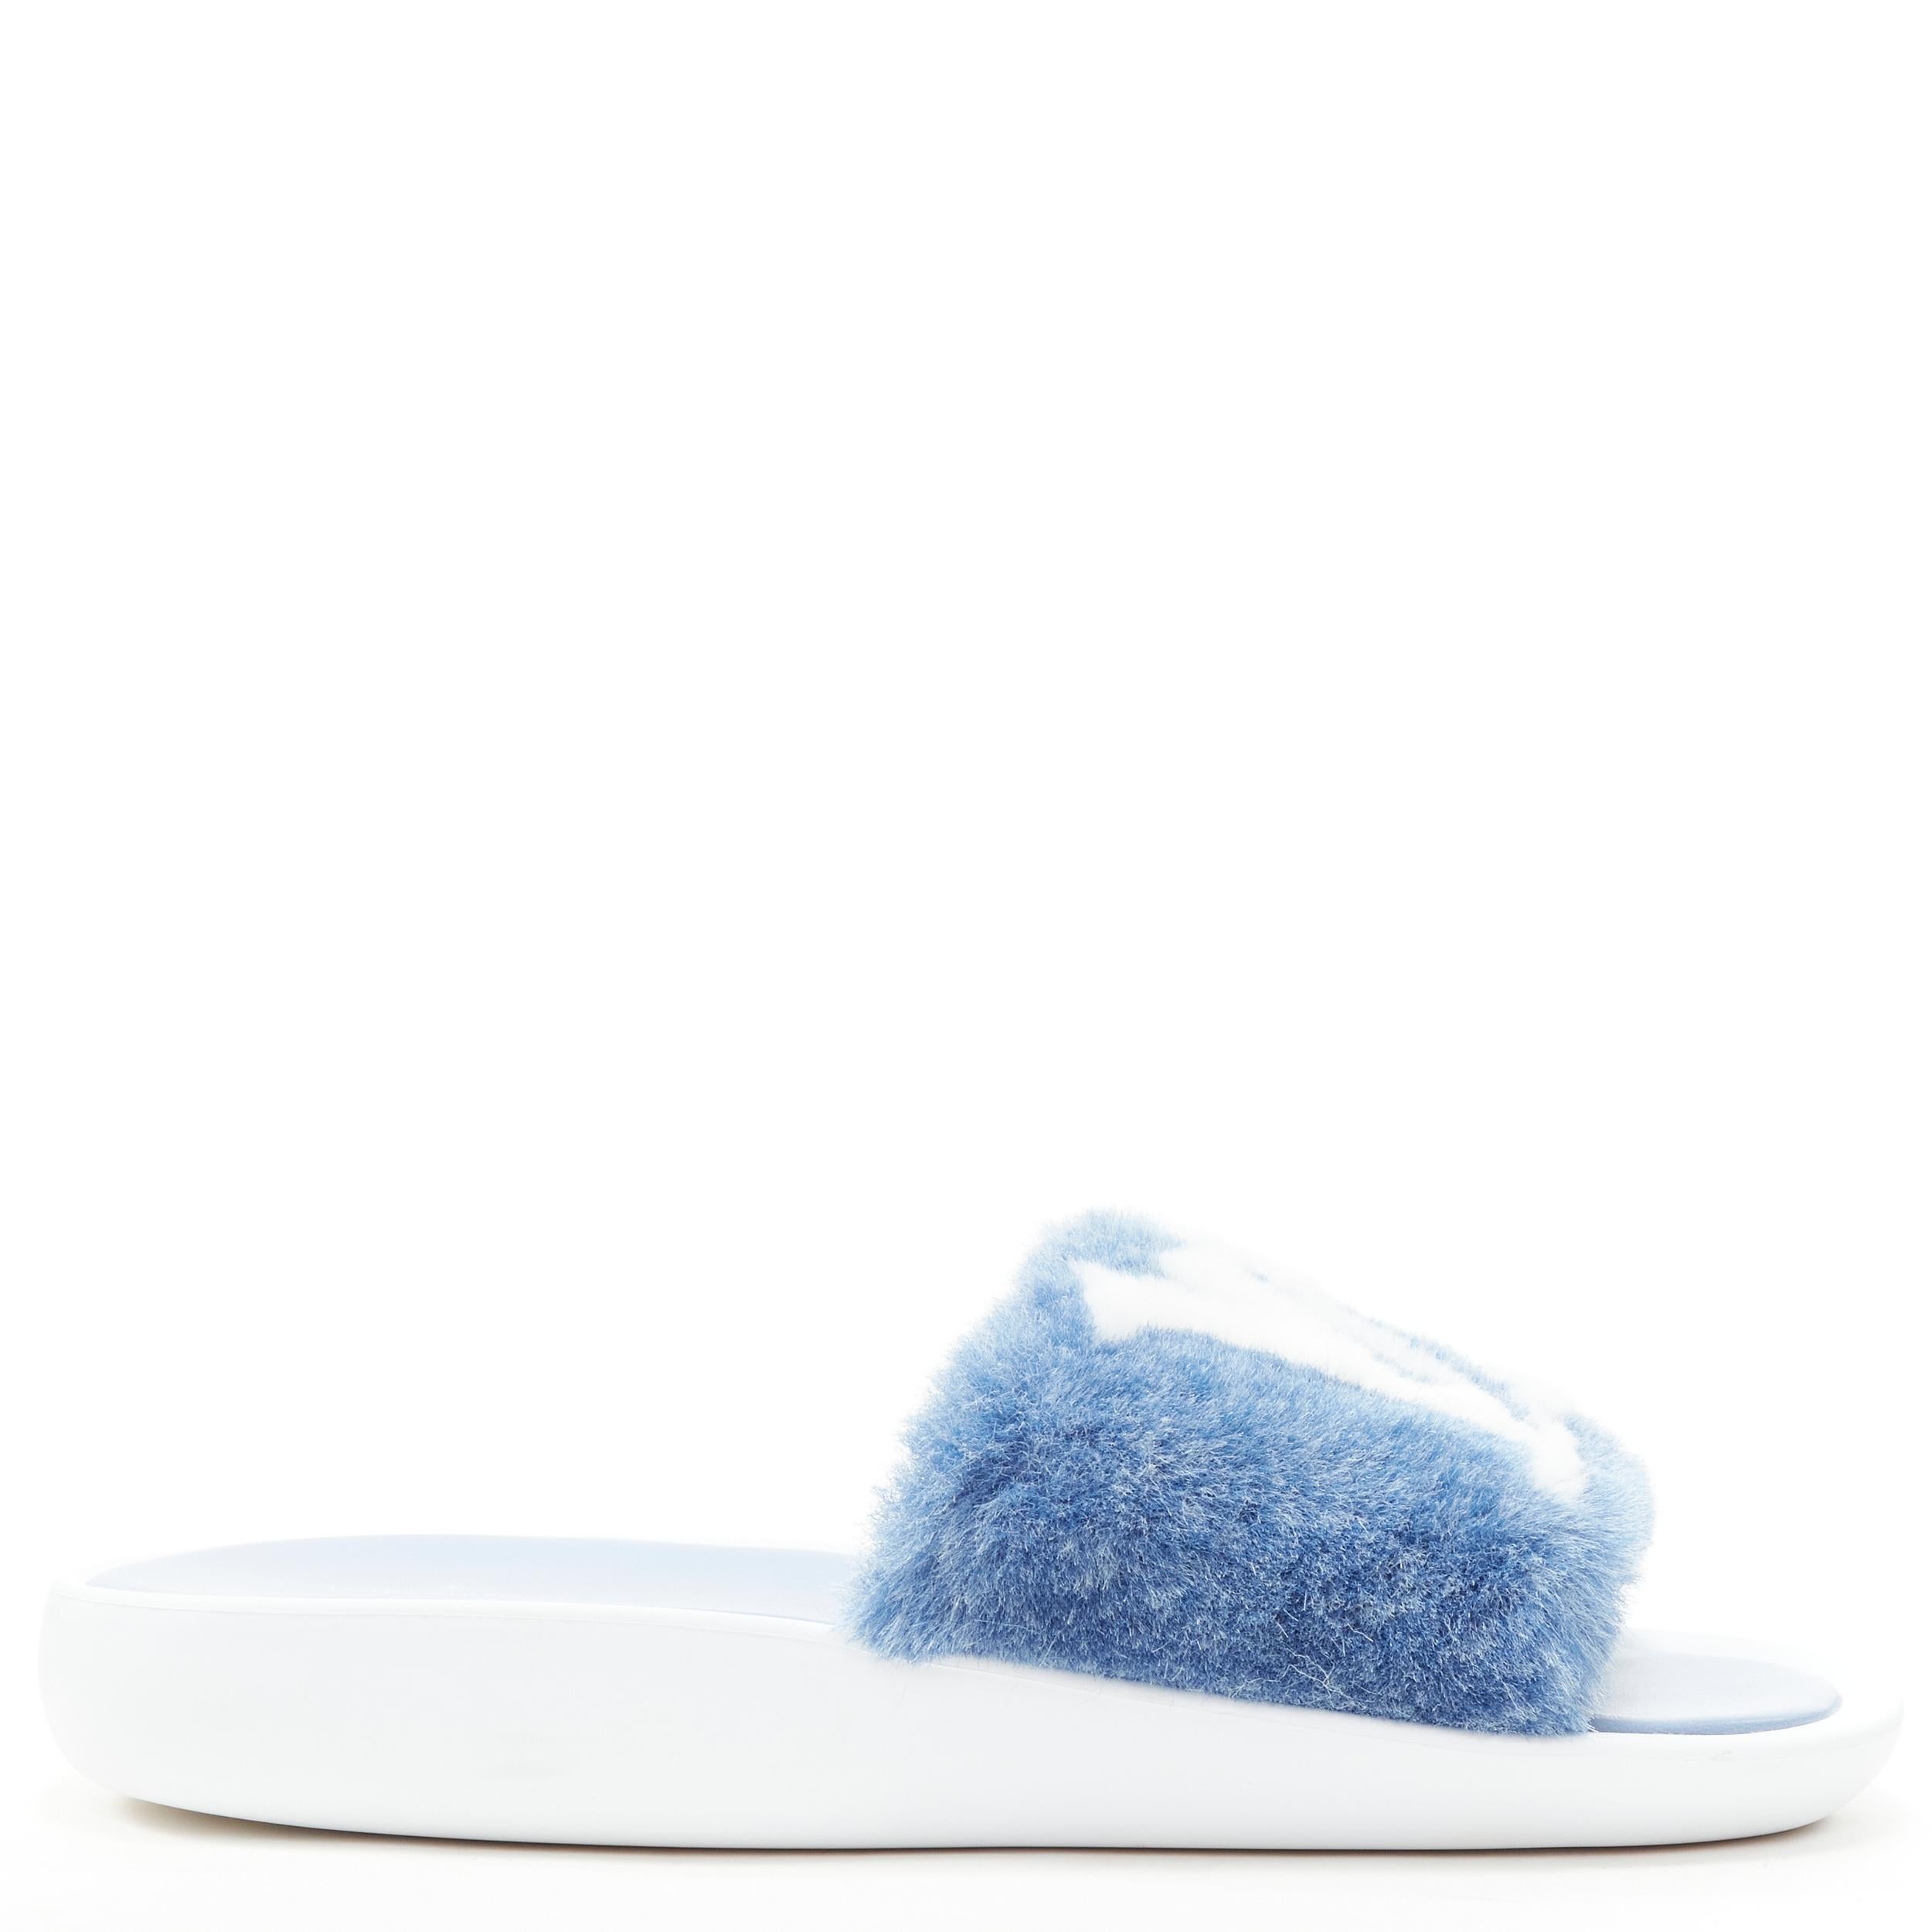 Blue Lv Sandals - For Sale on 1stDibs